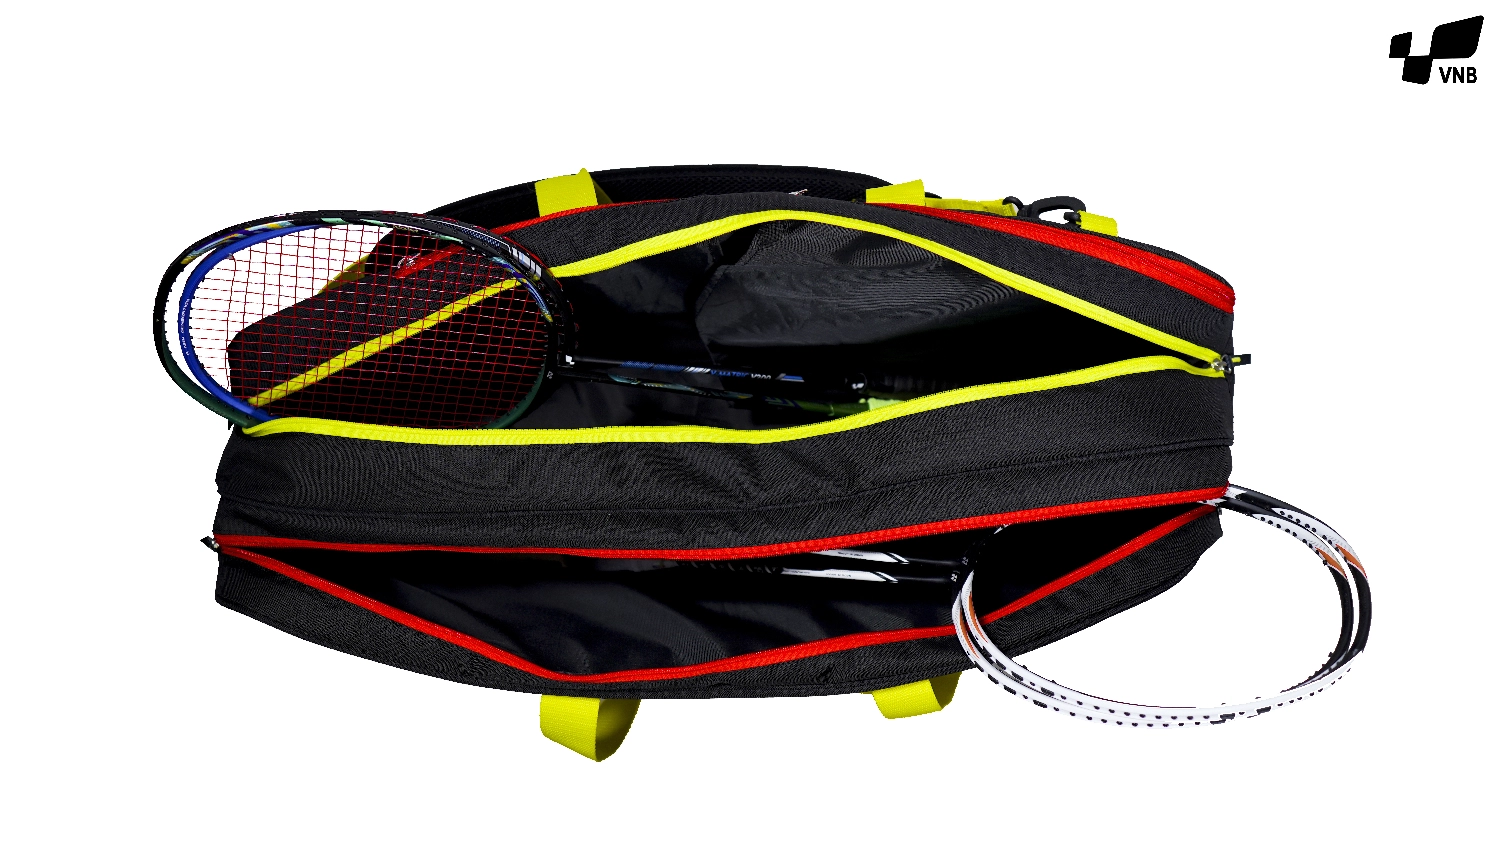 Túi đựng vợt cầu lông 3 ngăn giá rẻ VNB Bag 2020